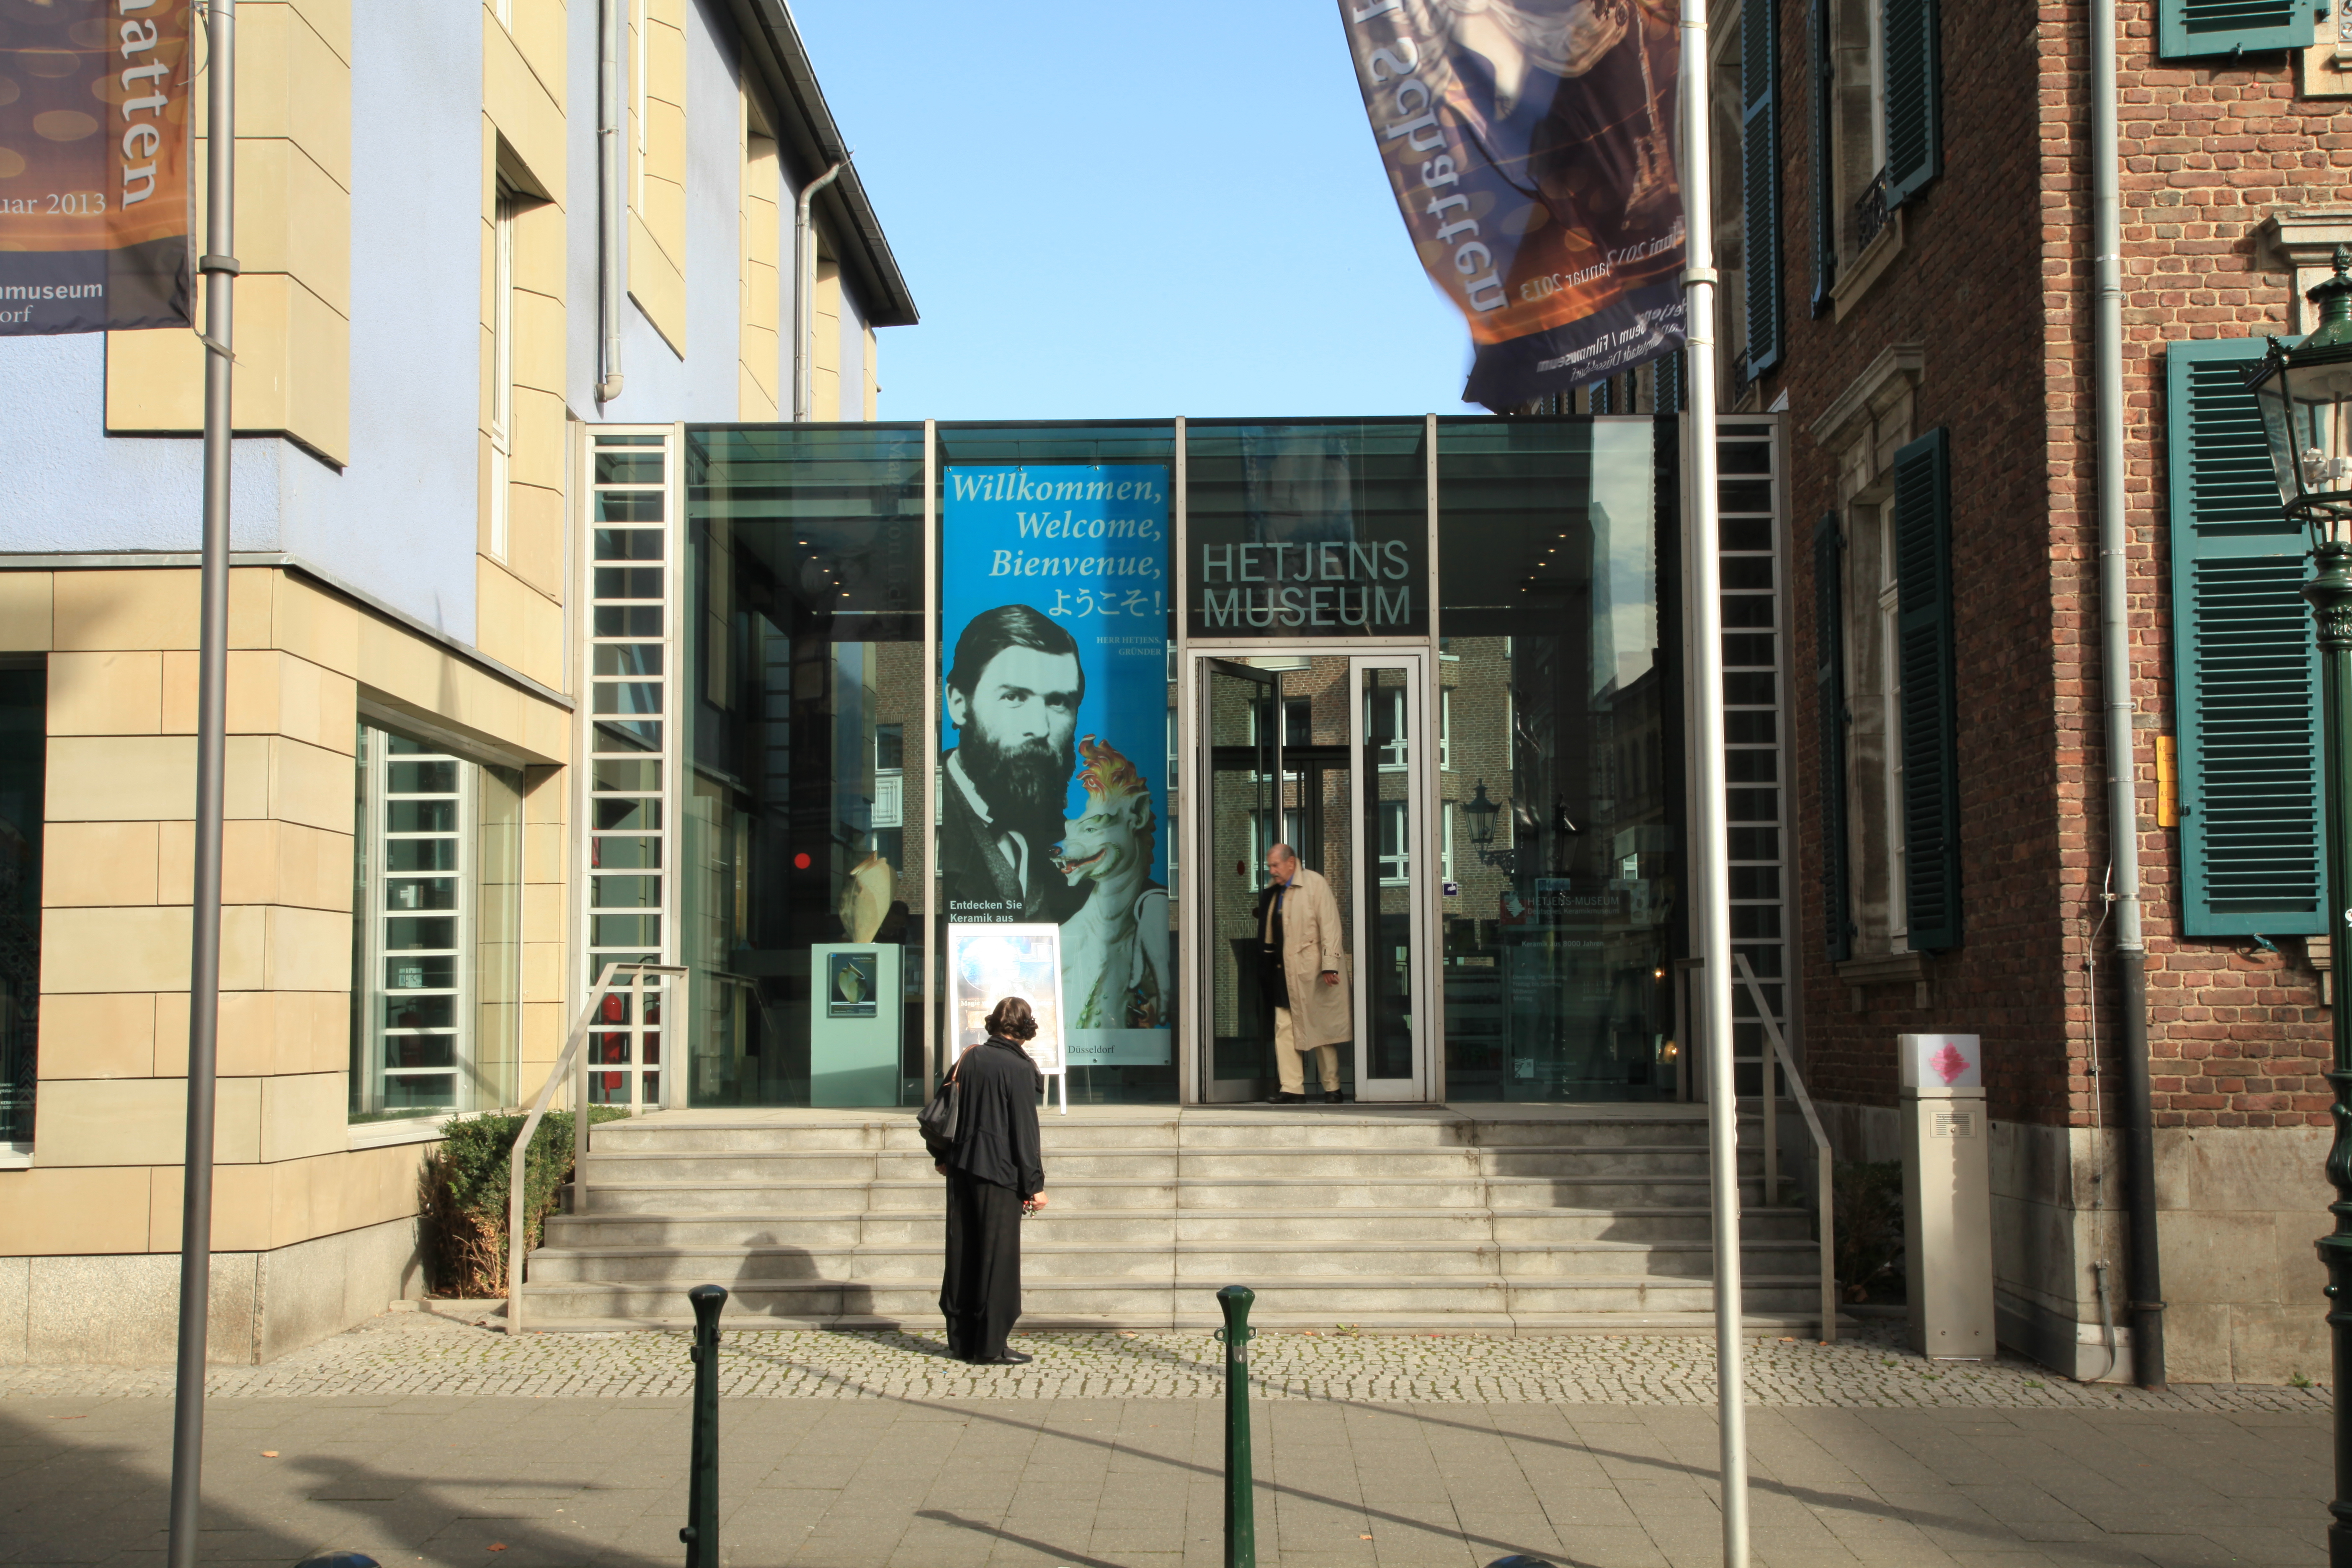 Hetjens-Museum, Düsseldorf